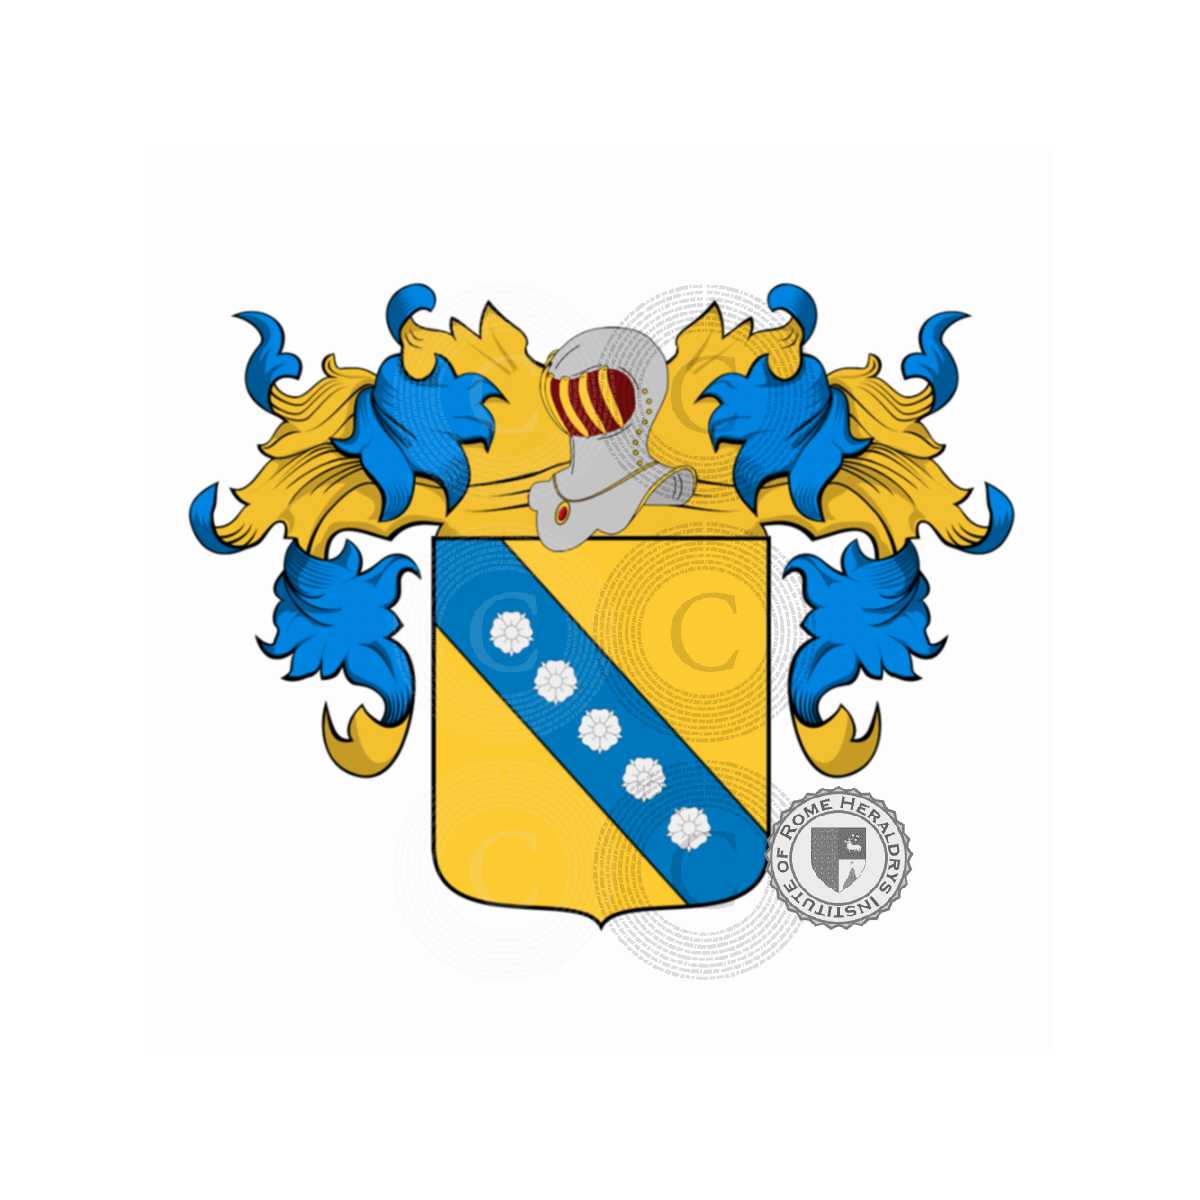 Coat of arms of familyGatti, del gatto,Gatta,Ugatti